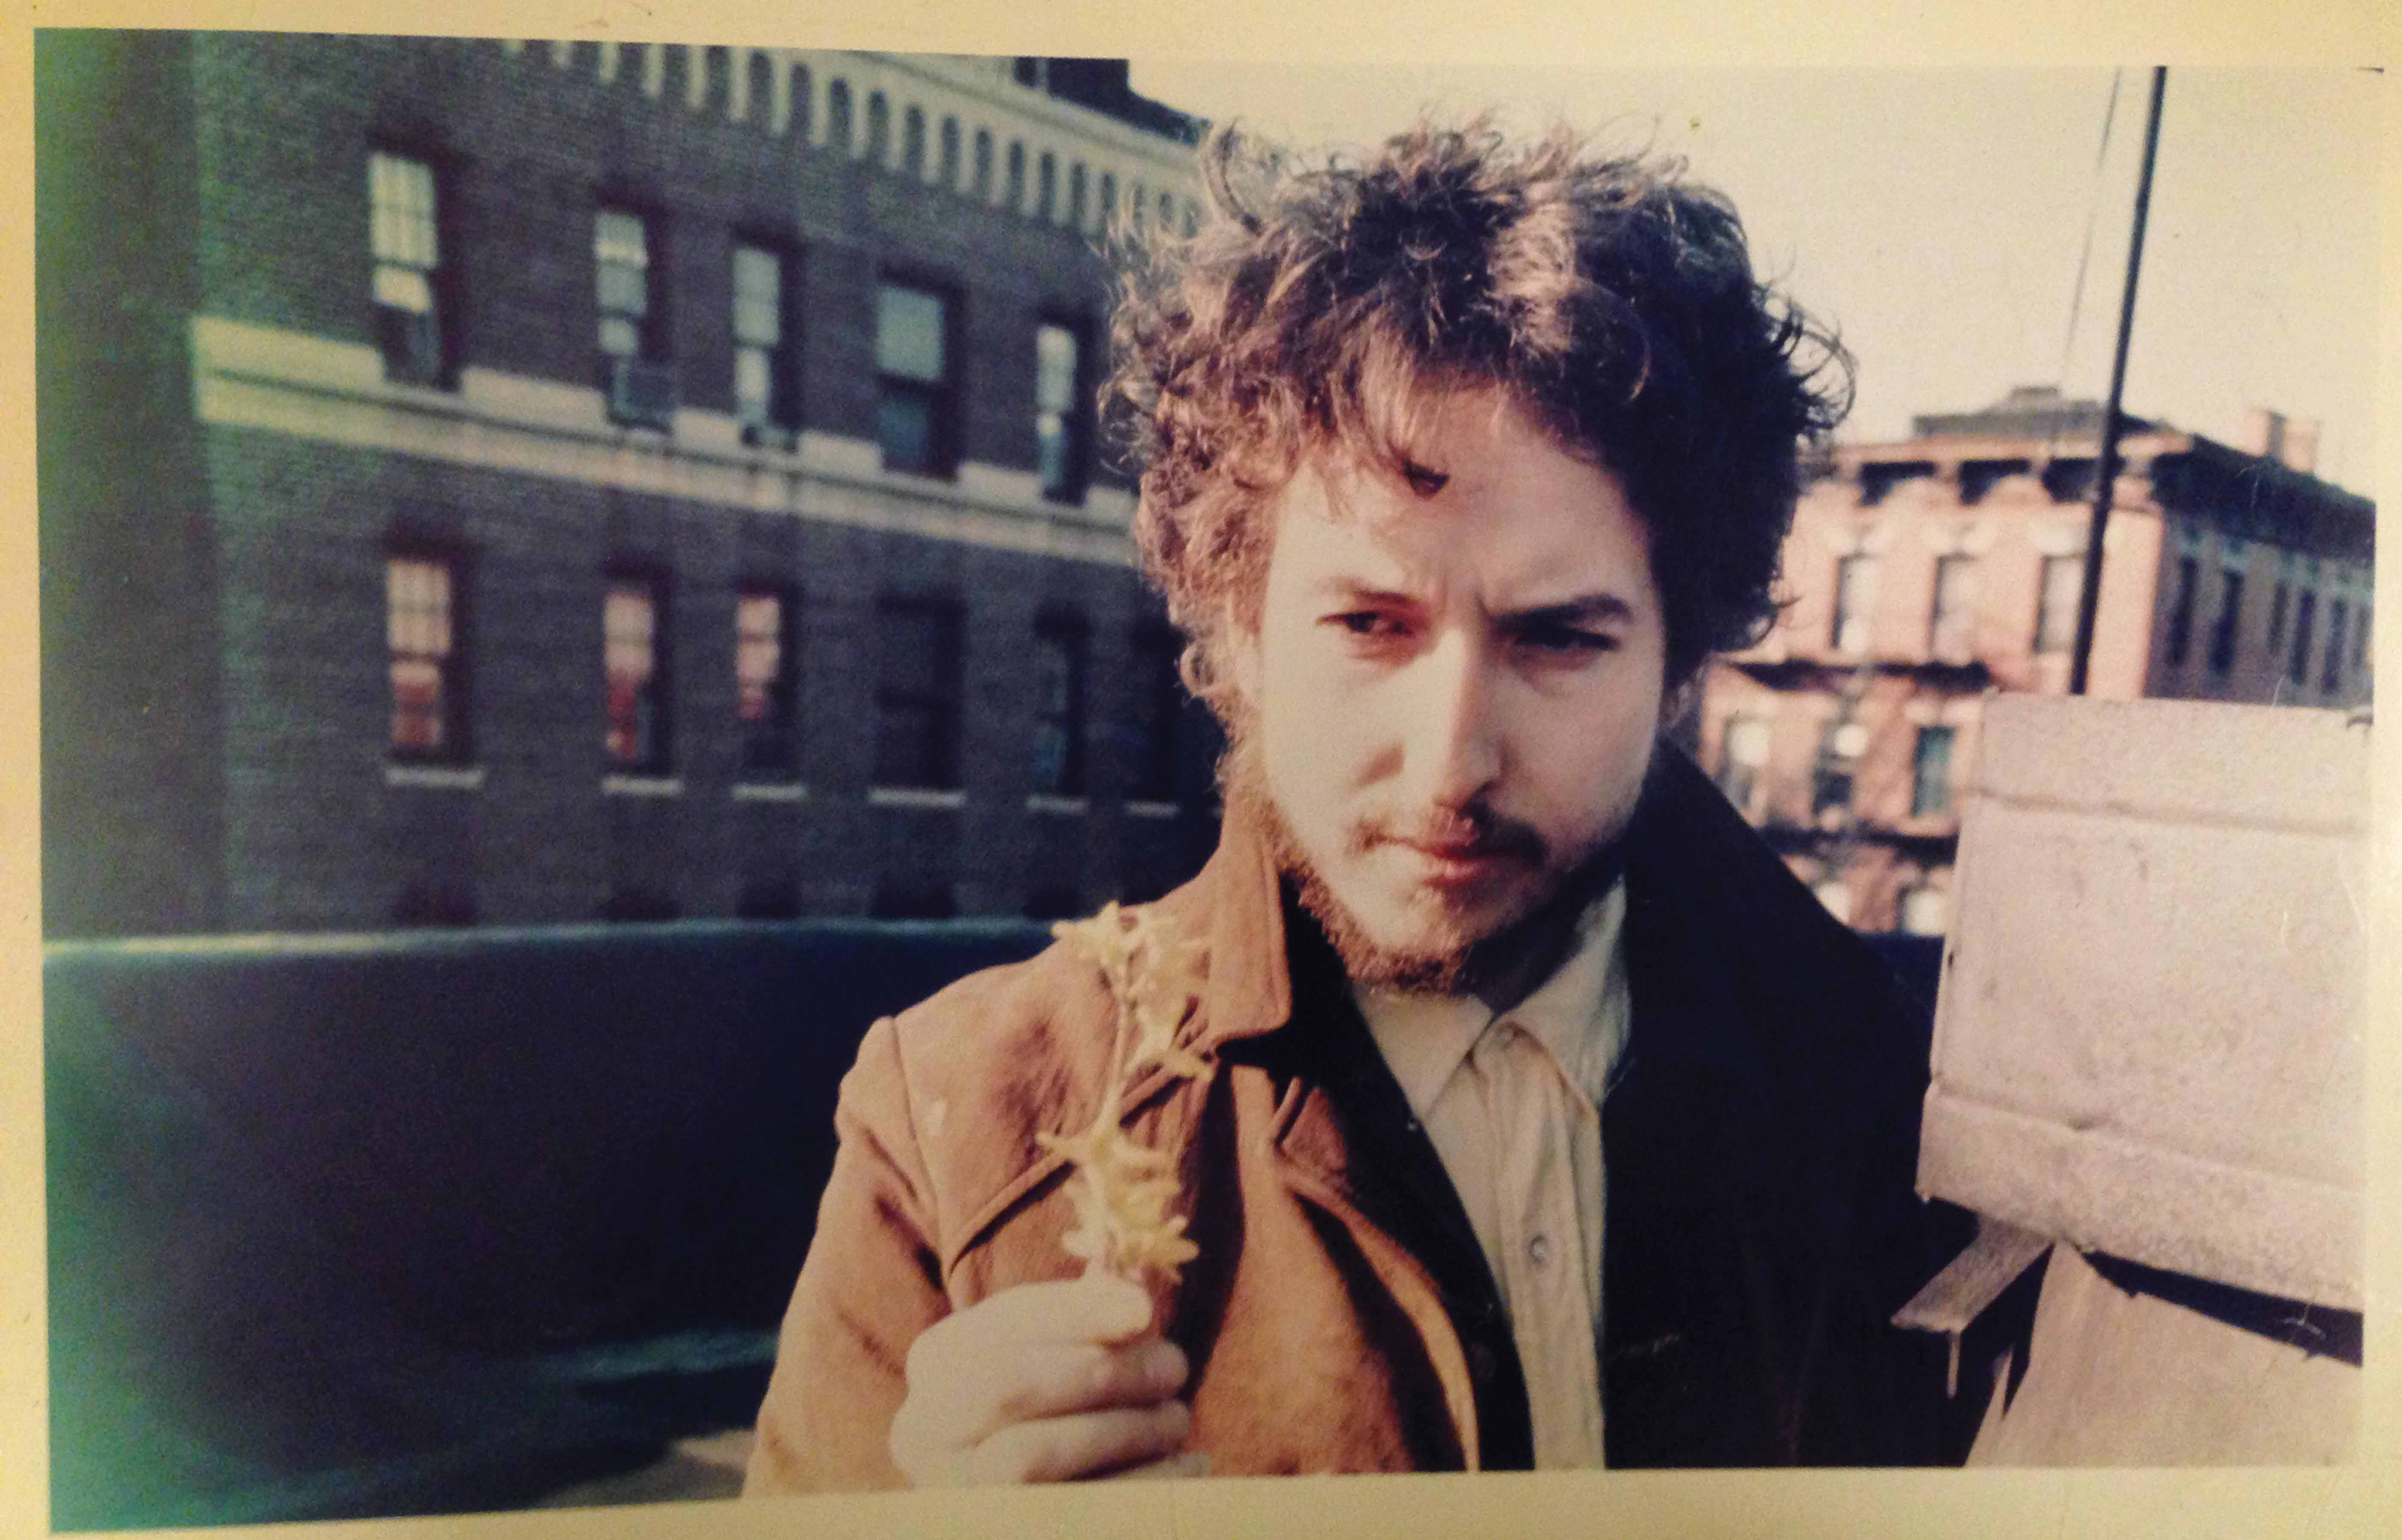 Dylan in New York, 1970